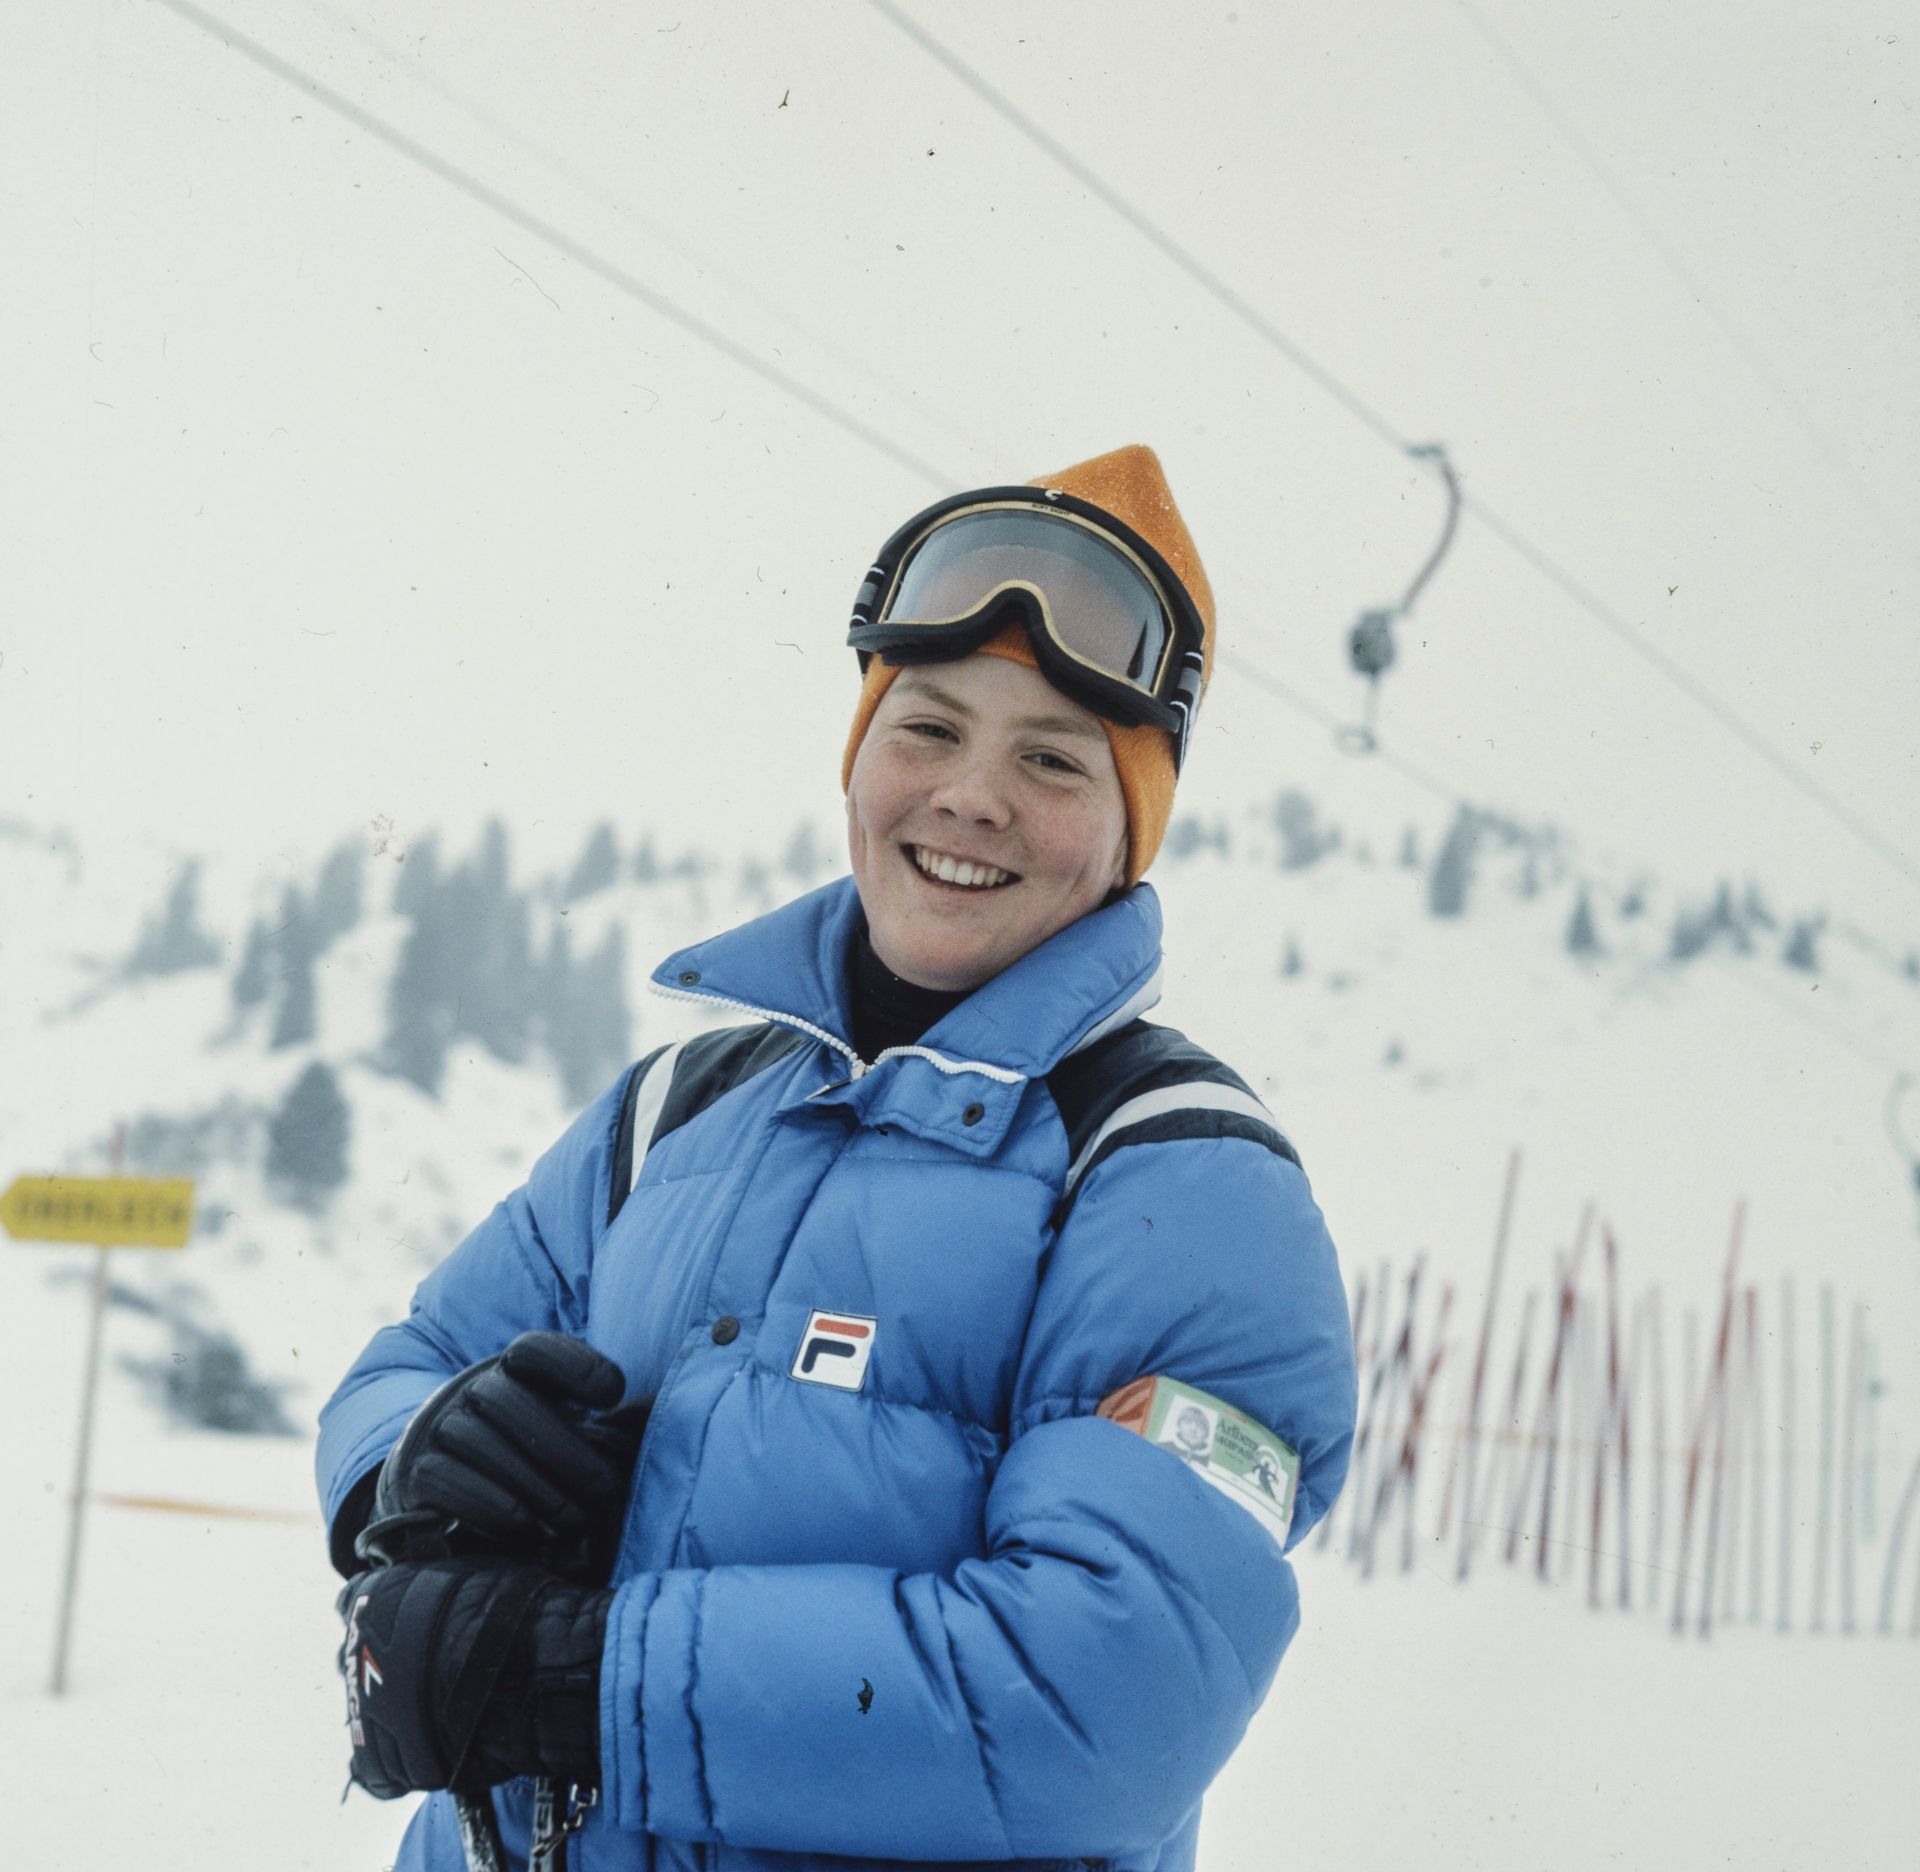 Deze foto wordt gemaakt in 1982 tijdens de wintersportvakantie in Oostenrijk.